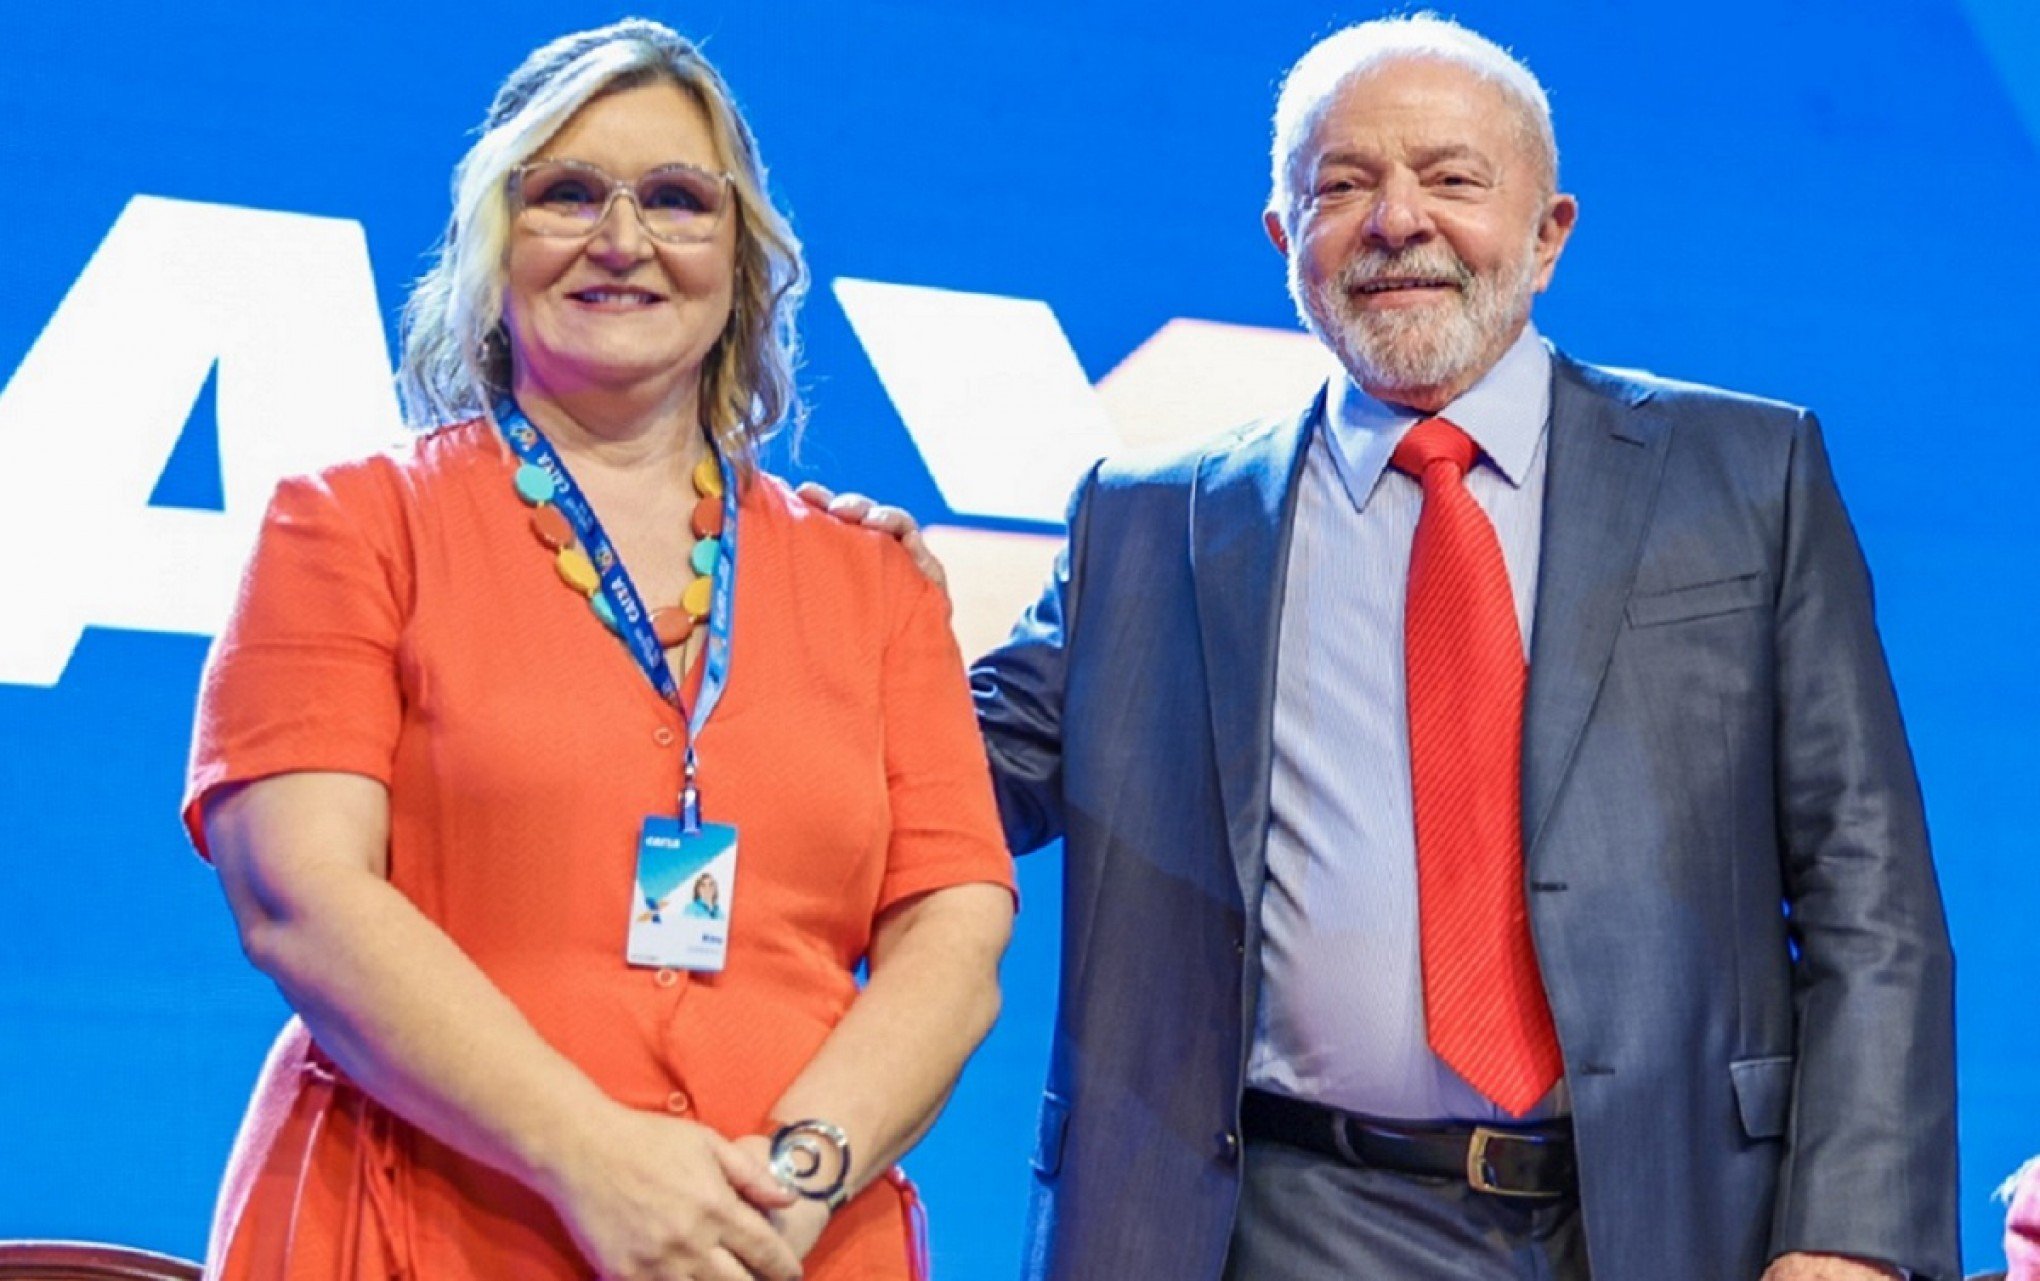 Lula demite Rita Serrano da presidência da Caixa Econômica